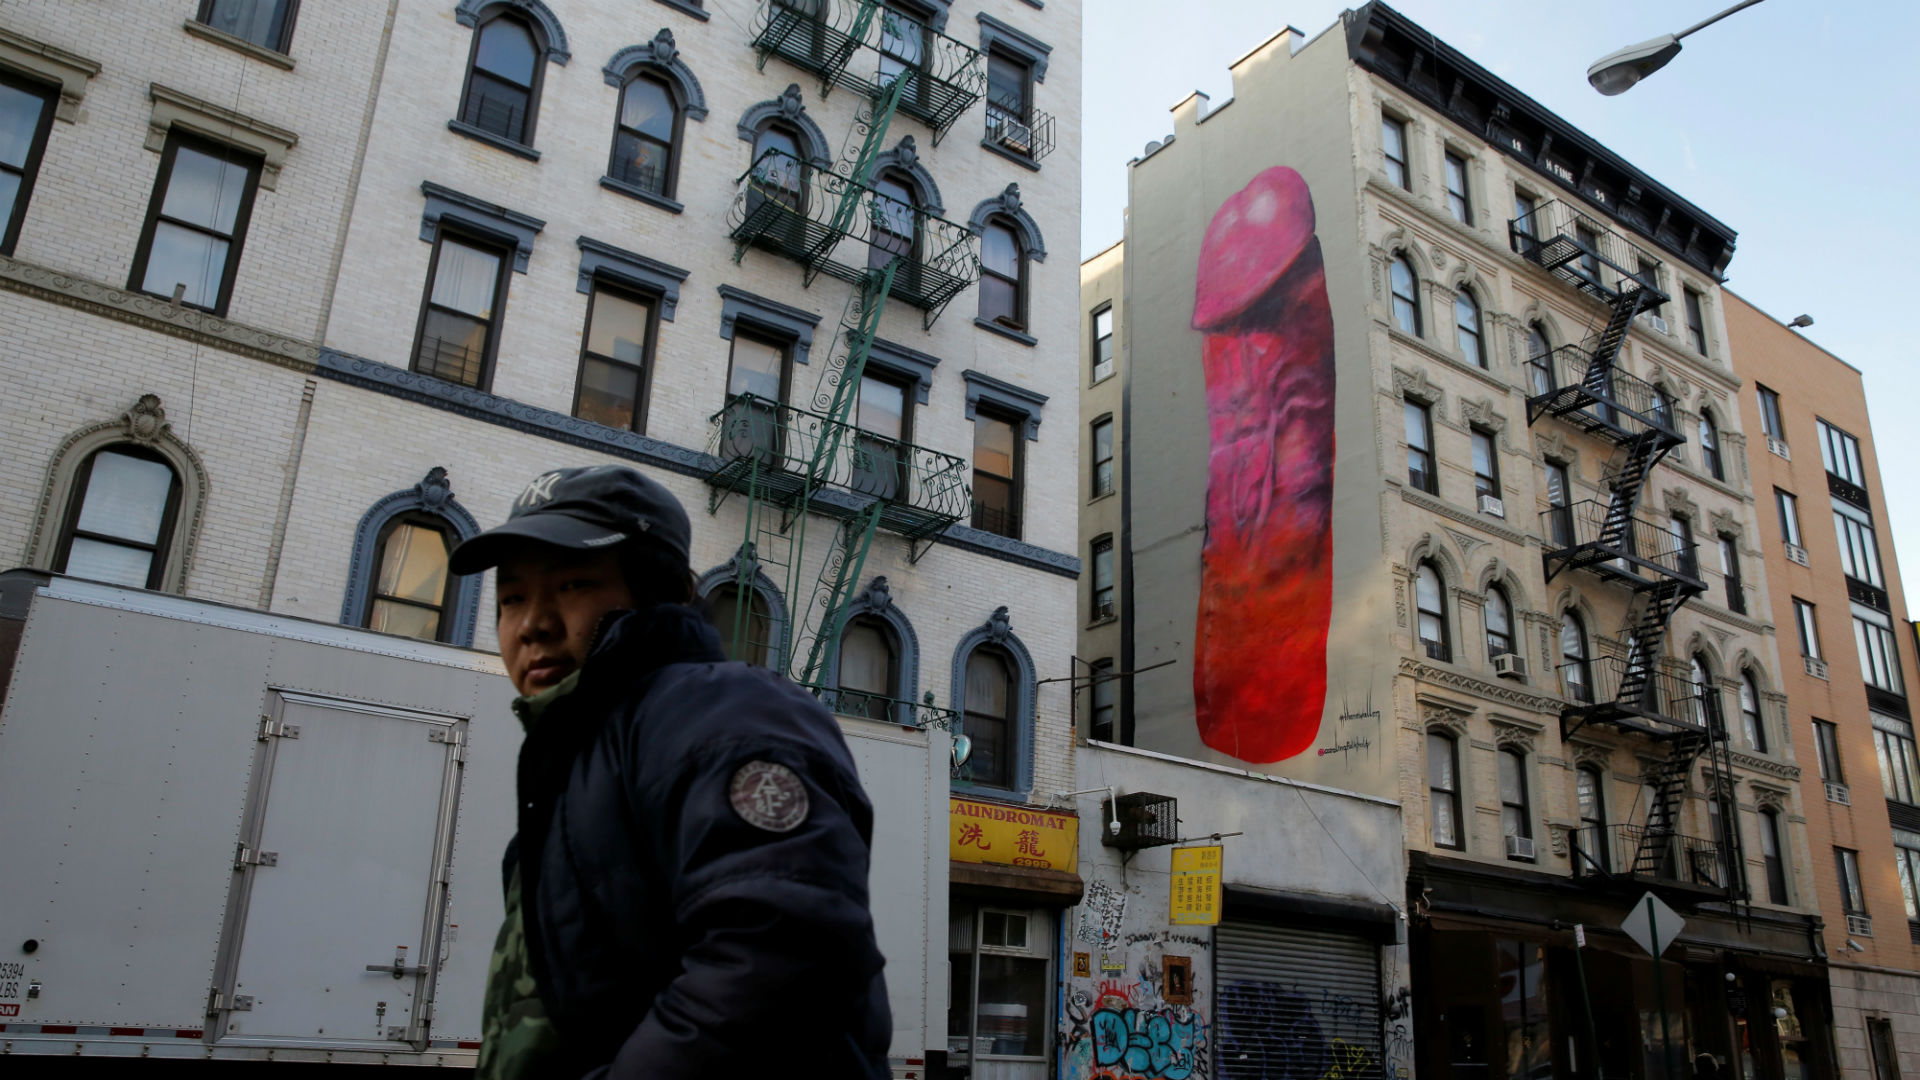 Un pene gigante aparece pintado en la fachada de un edificio y escandaliza a Nueva York